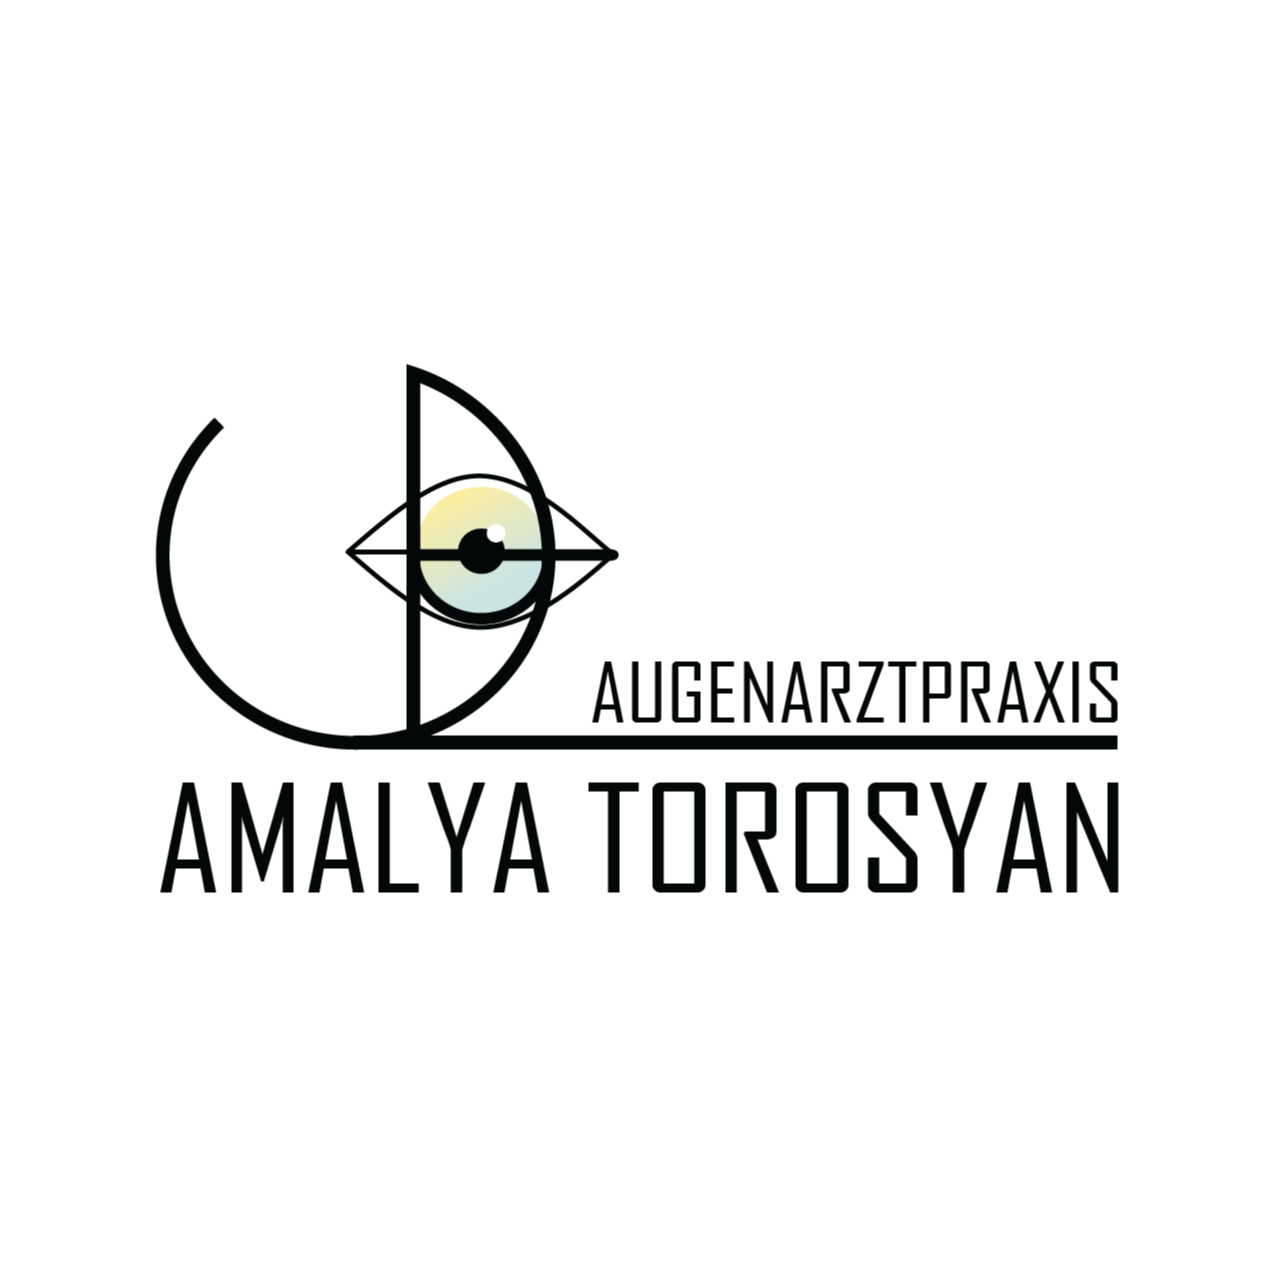 Augenarztpraxis Amalya Torosyan Fachärztin für Augenheilkunde in Mühlacker - Logo